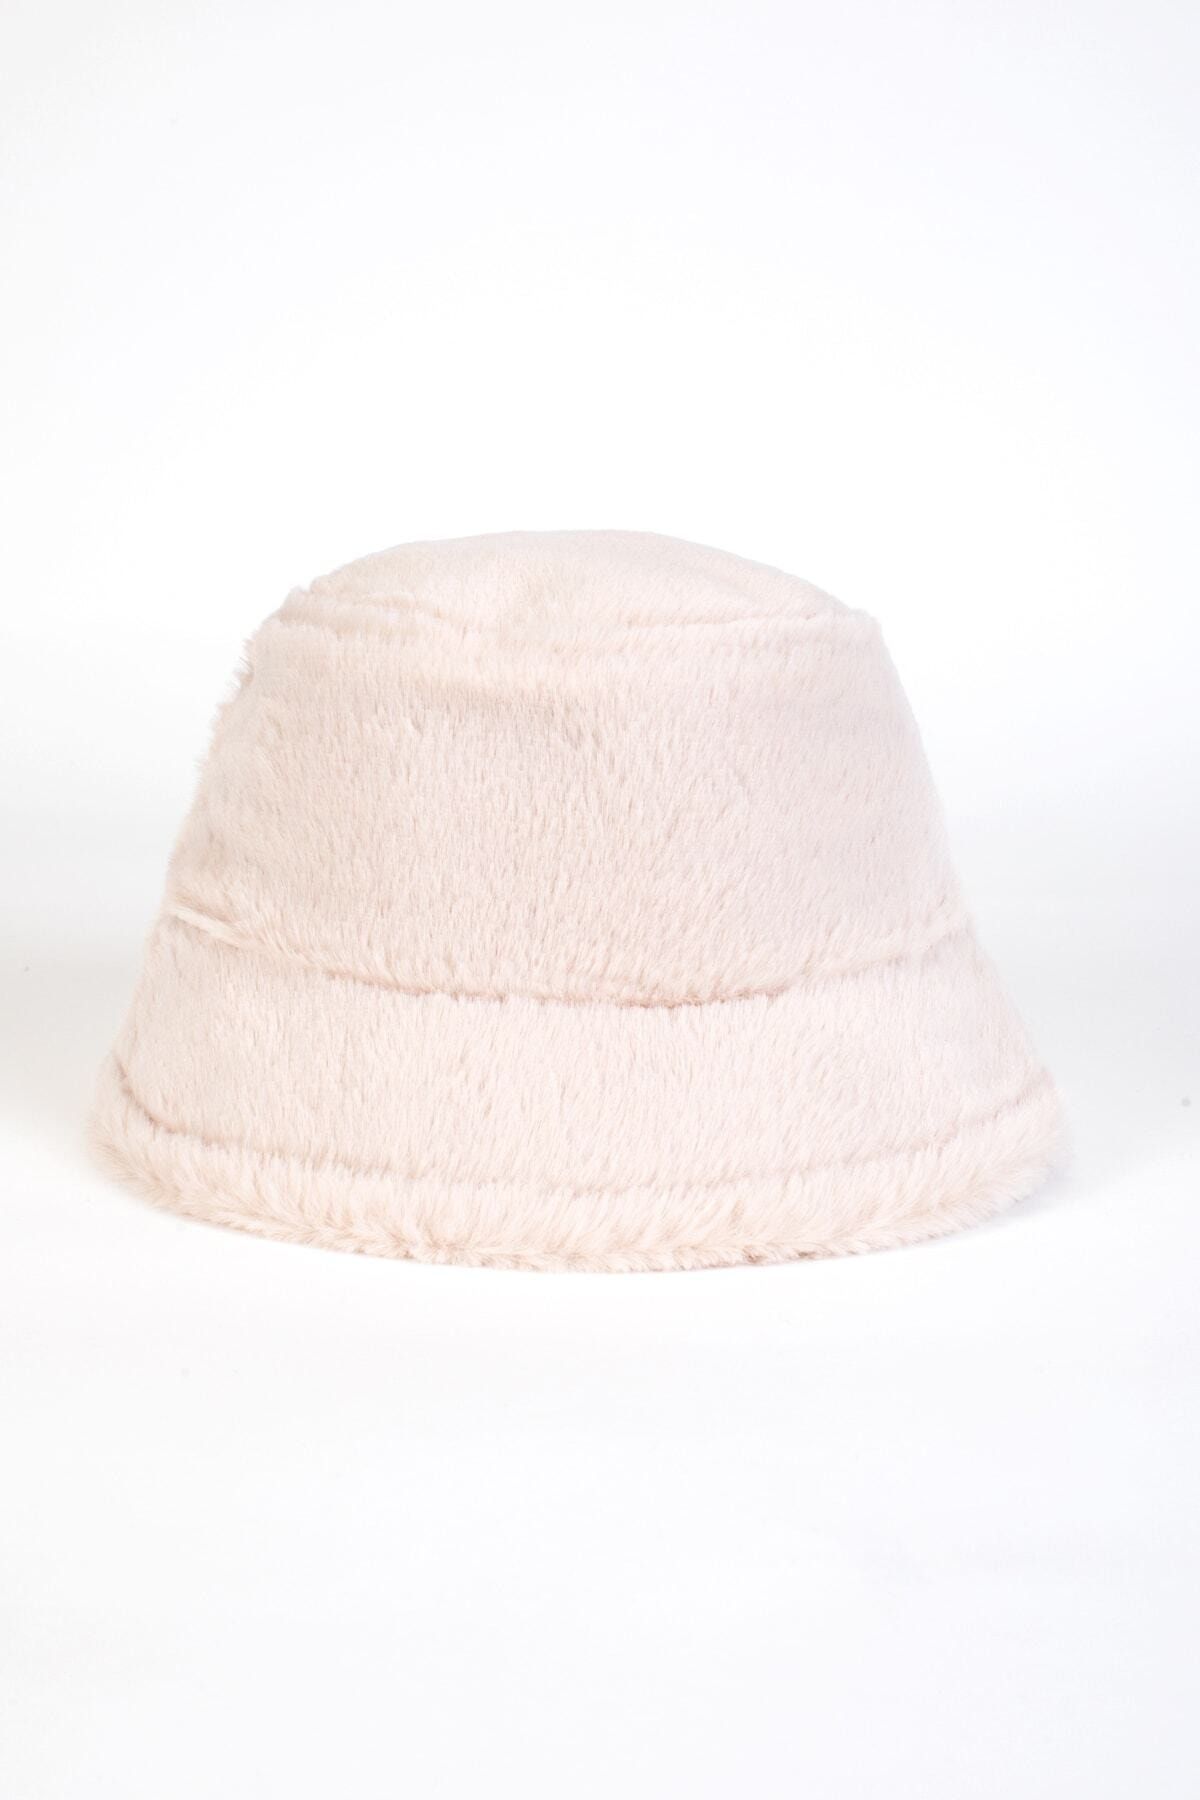 Genel Markalar Tavşan Tüyü Peluş Bucket Kova Moda Kadın Kışlık Şapka